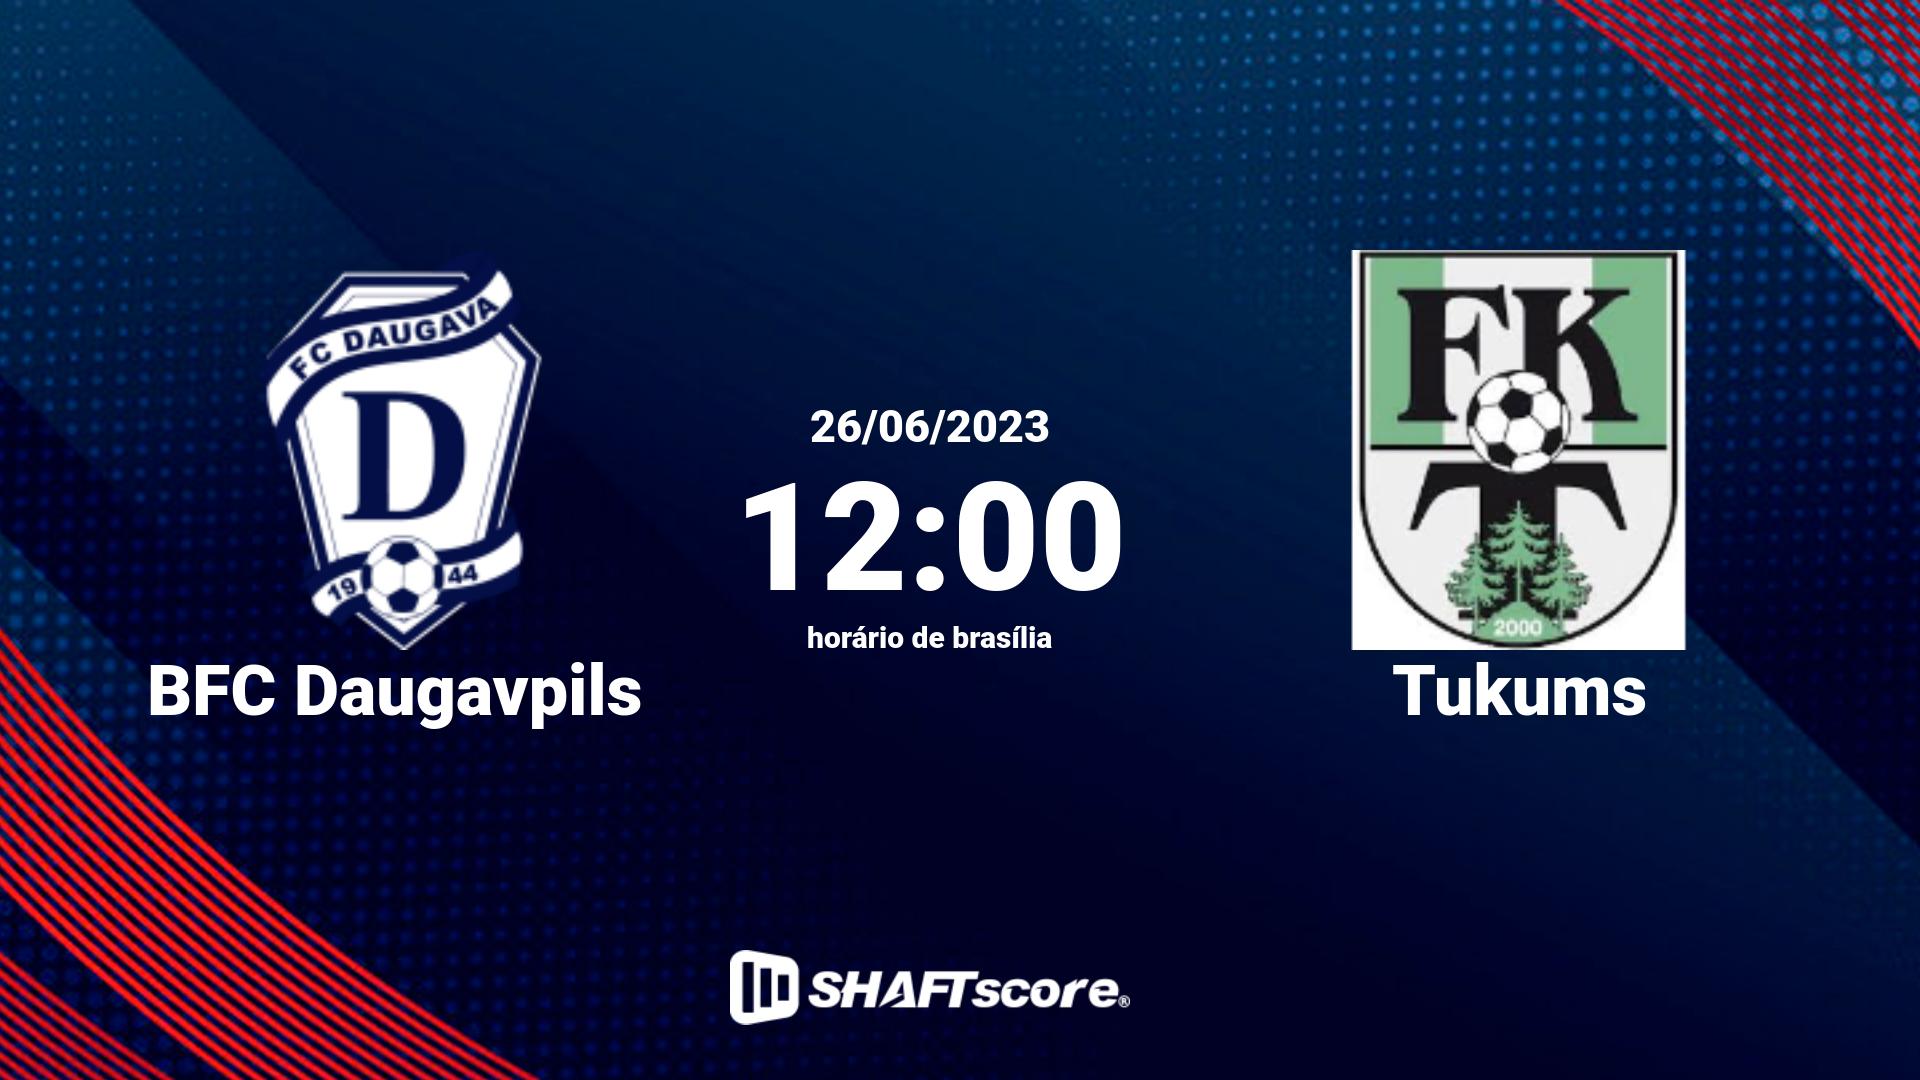 Estatísticas do jogo BFC Daugavpils vs Tukums 26.06 12:00